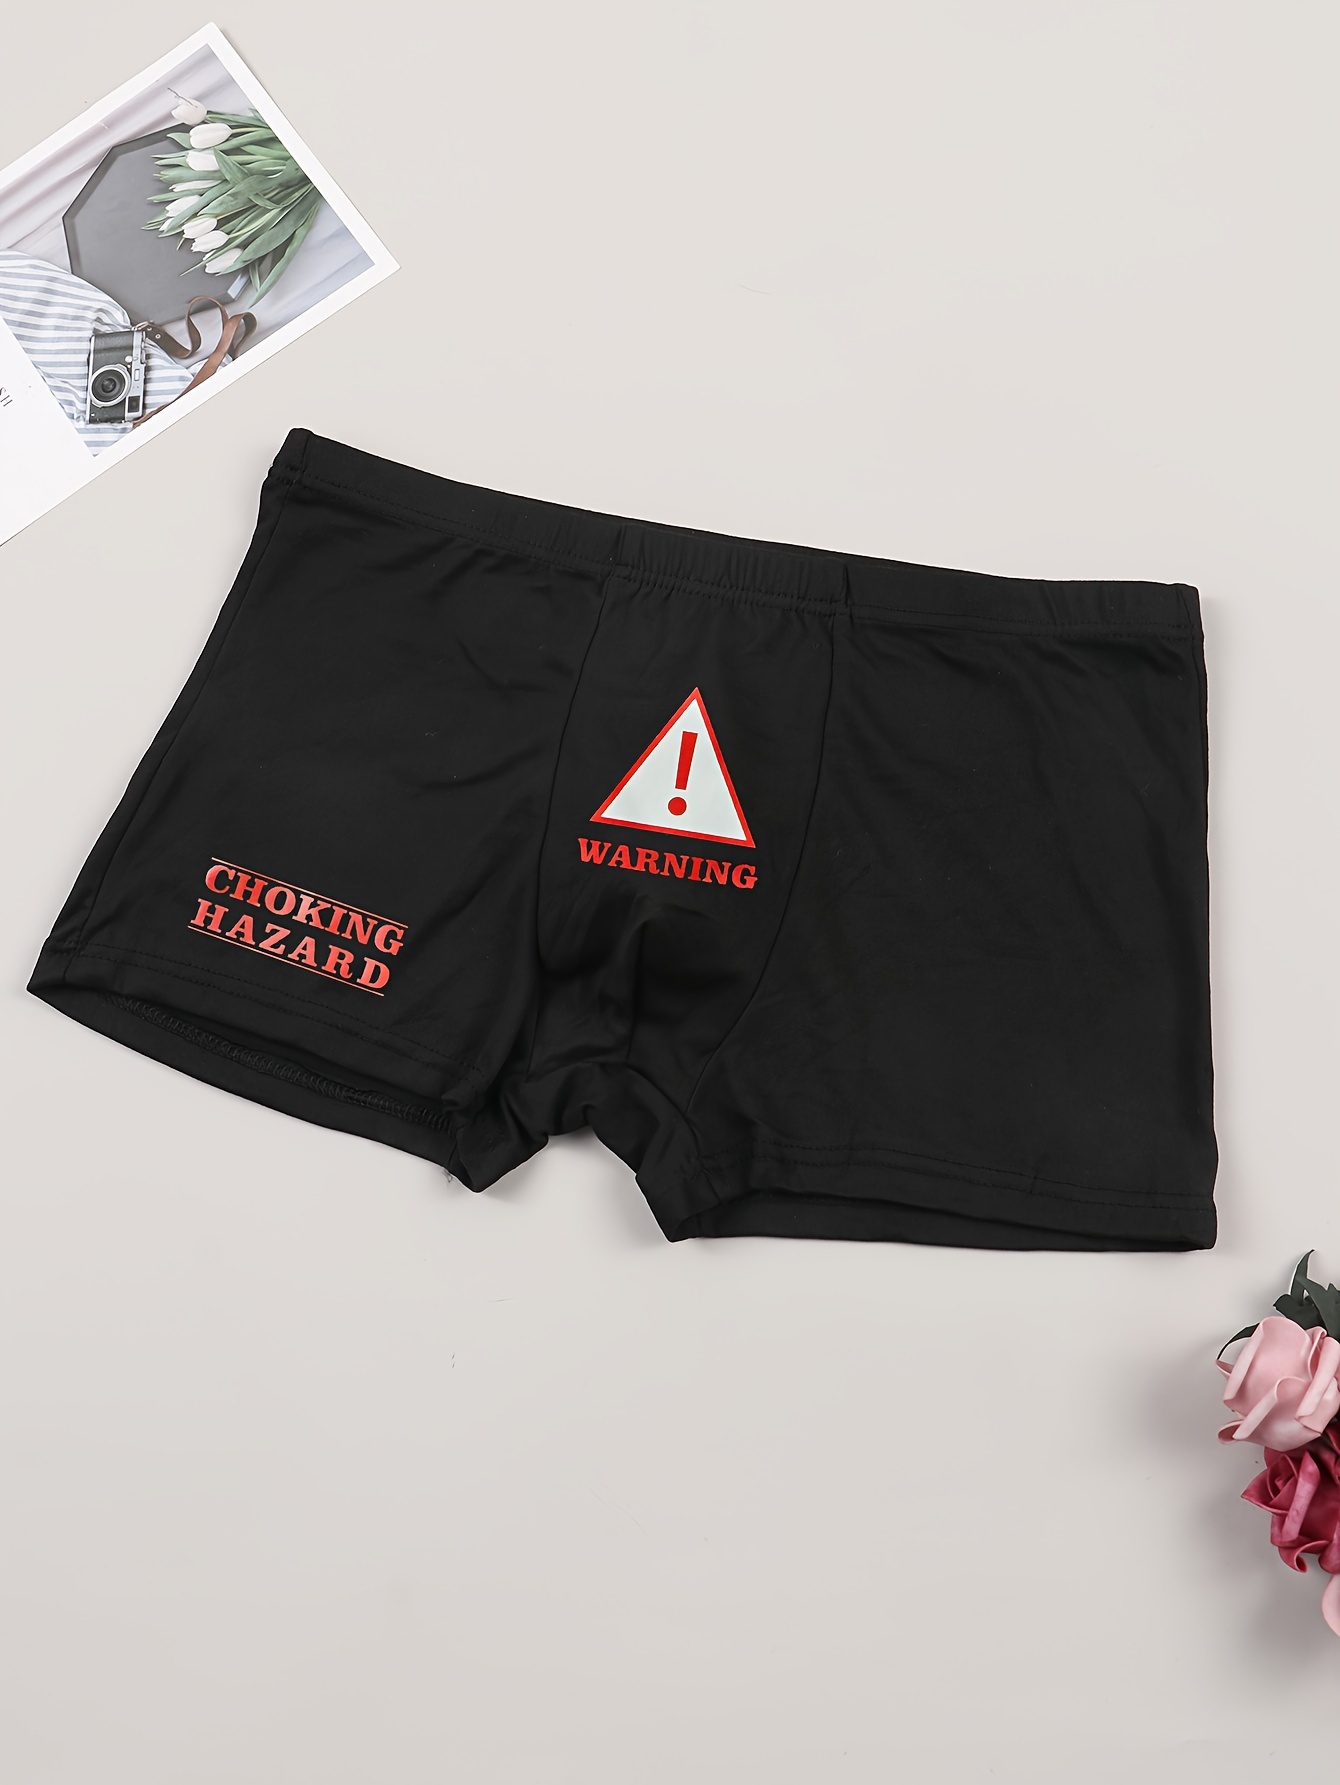 Warning Choking Hazard - Unisex Cotton Boxer Shorts Underwear